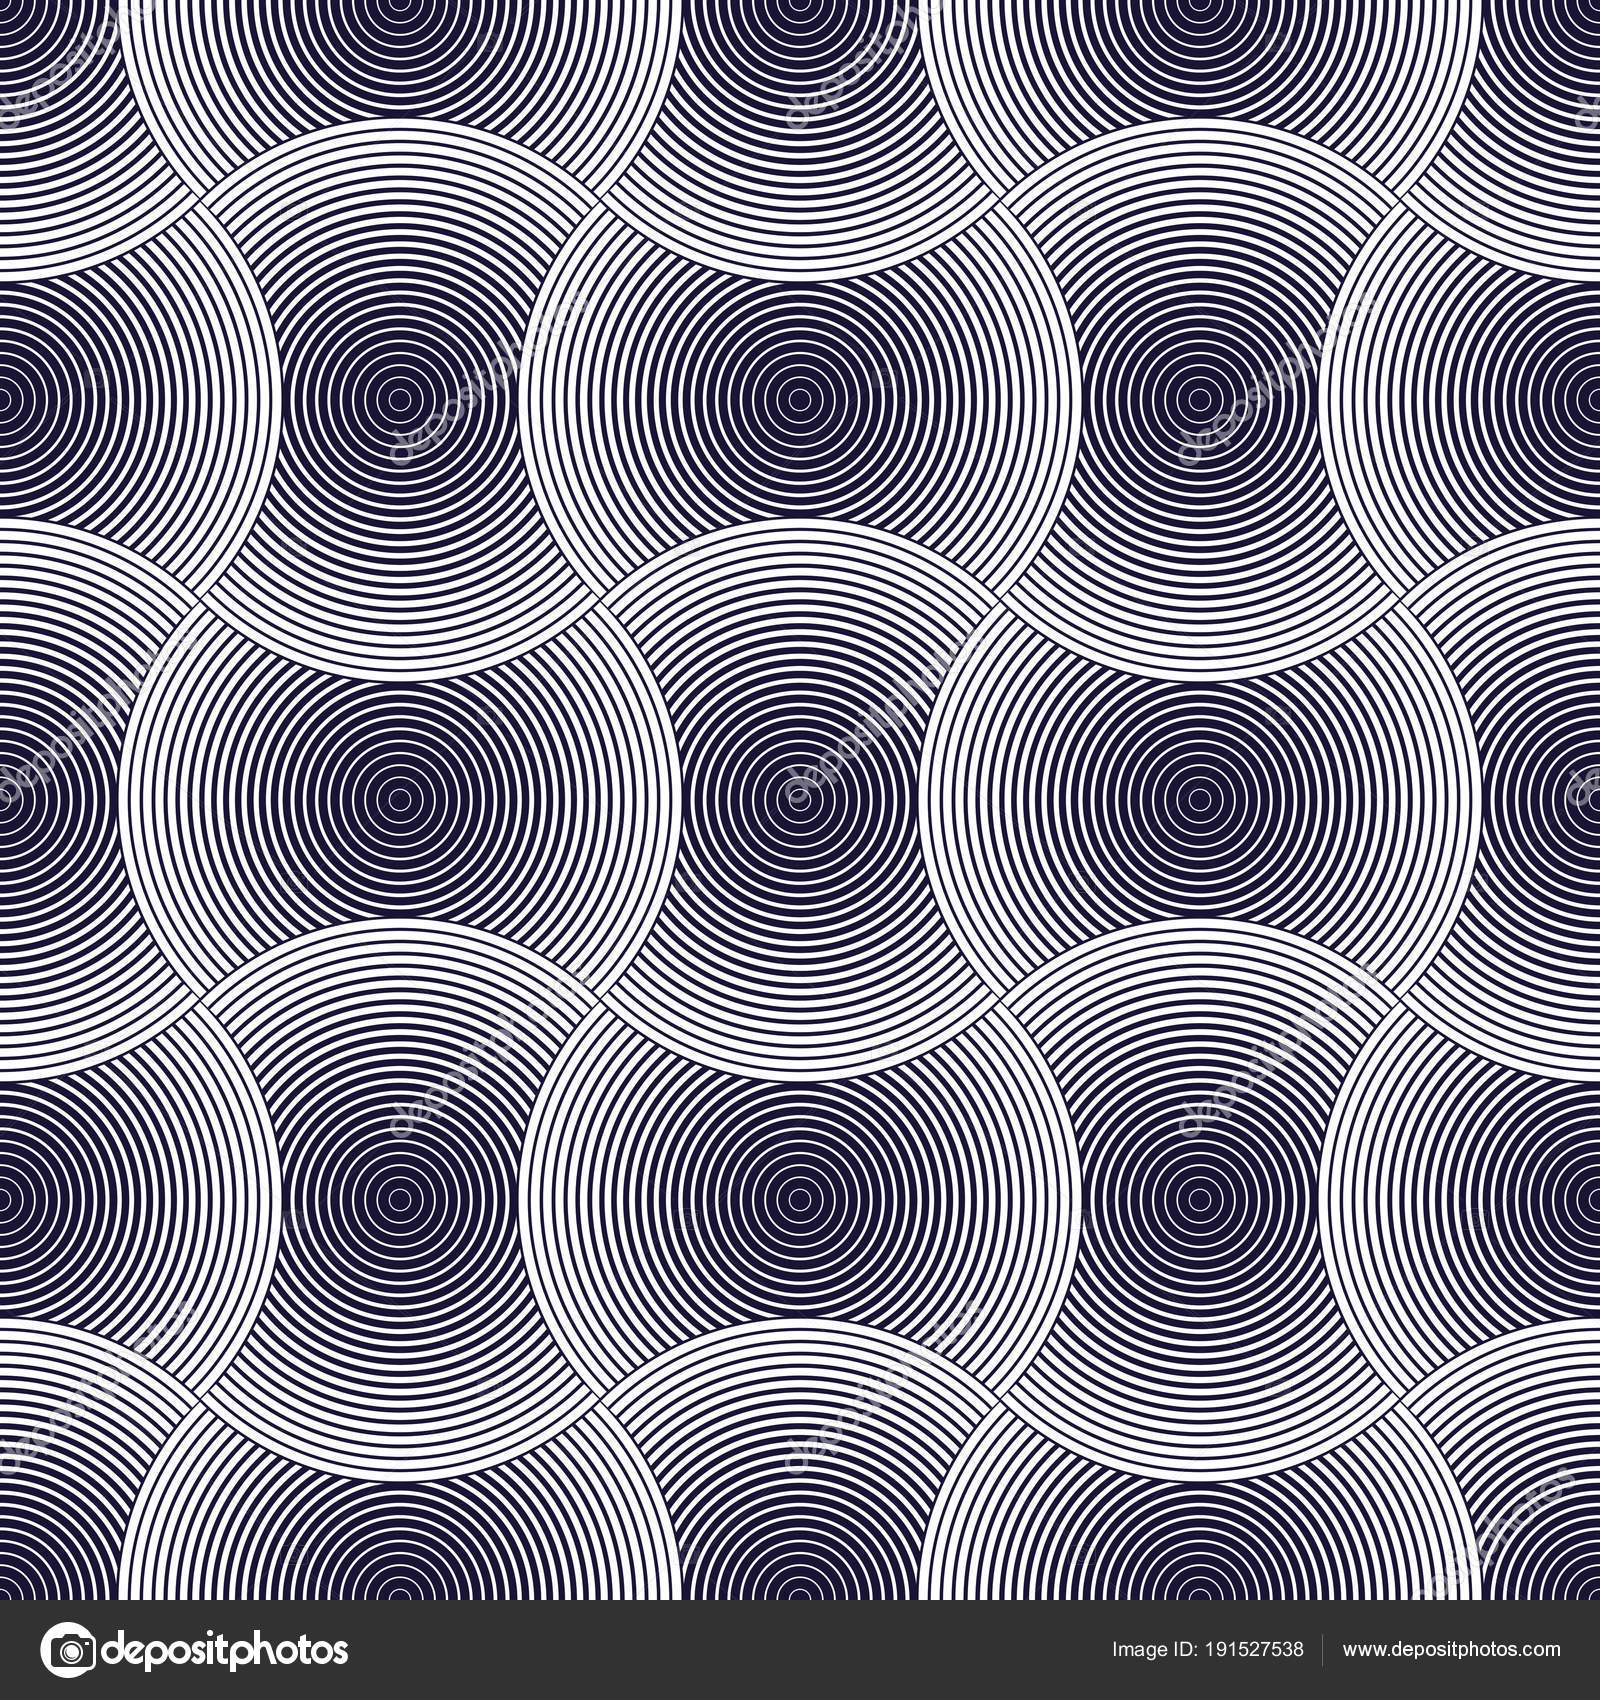 Circle - HD Wallpaper 